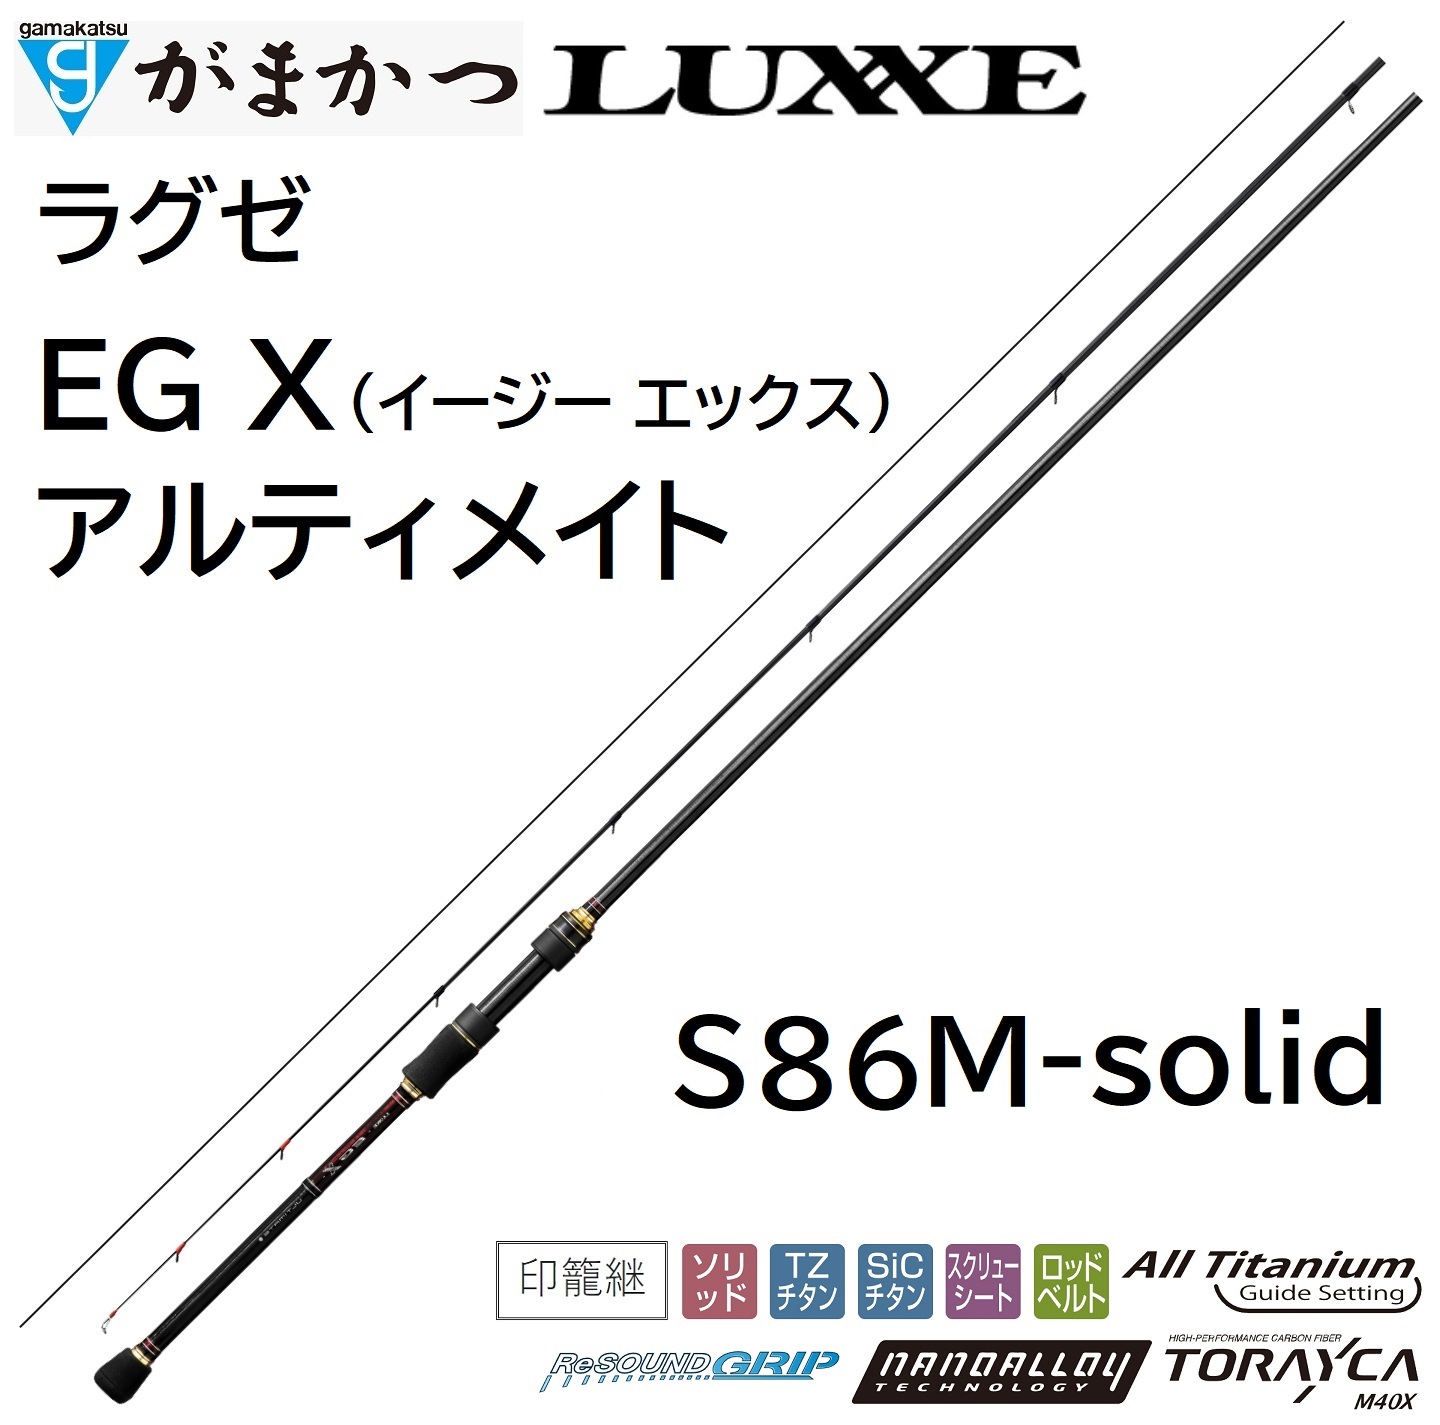 (再入荷予約)がまかつ/ラグゼ EG X アルティメイト S77ML+-solid 24734 イージーエックス エギングロッド ULTIMATE  Gamakatsu/Luxxe 国産・日本製(送料無料)